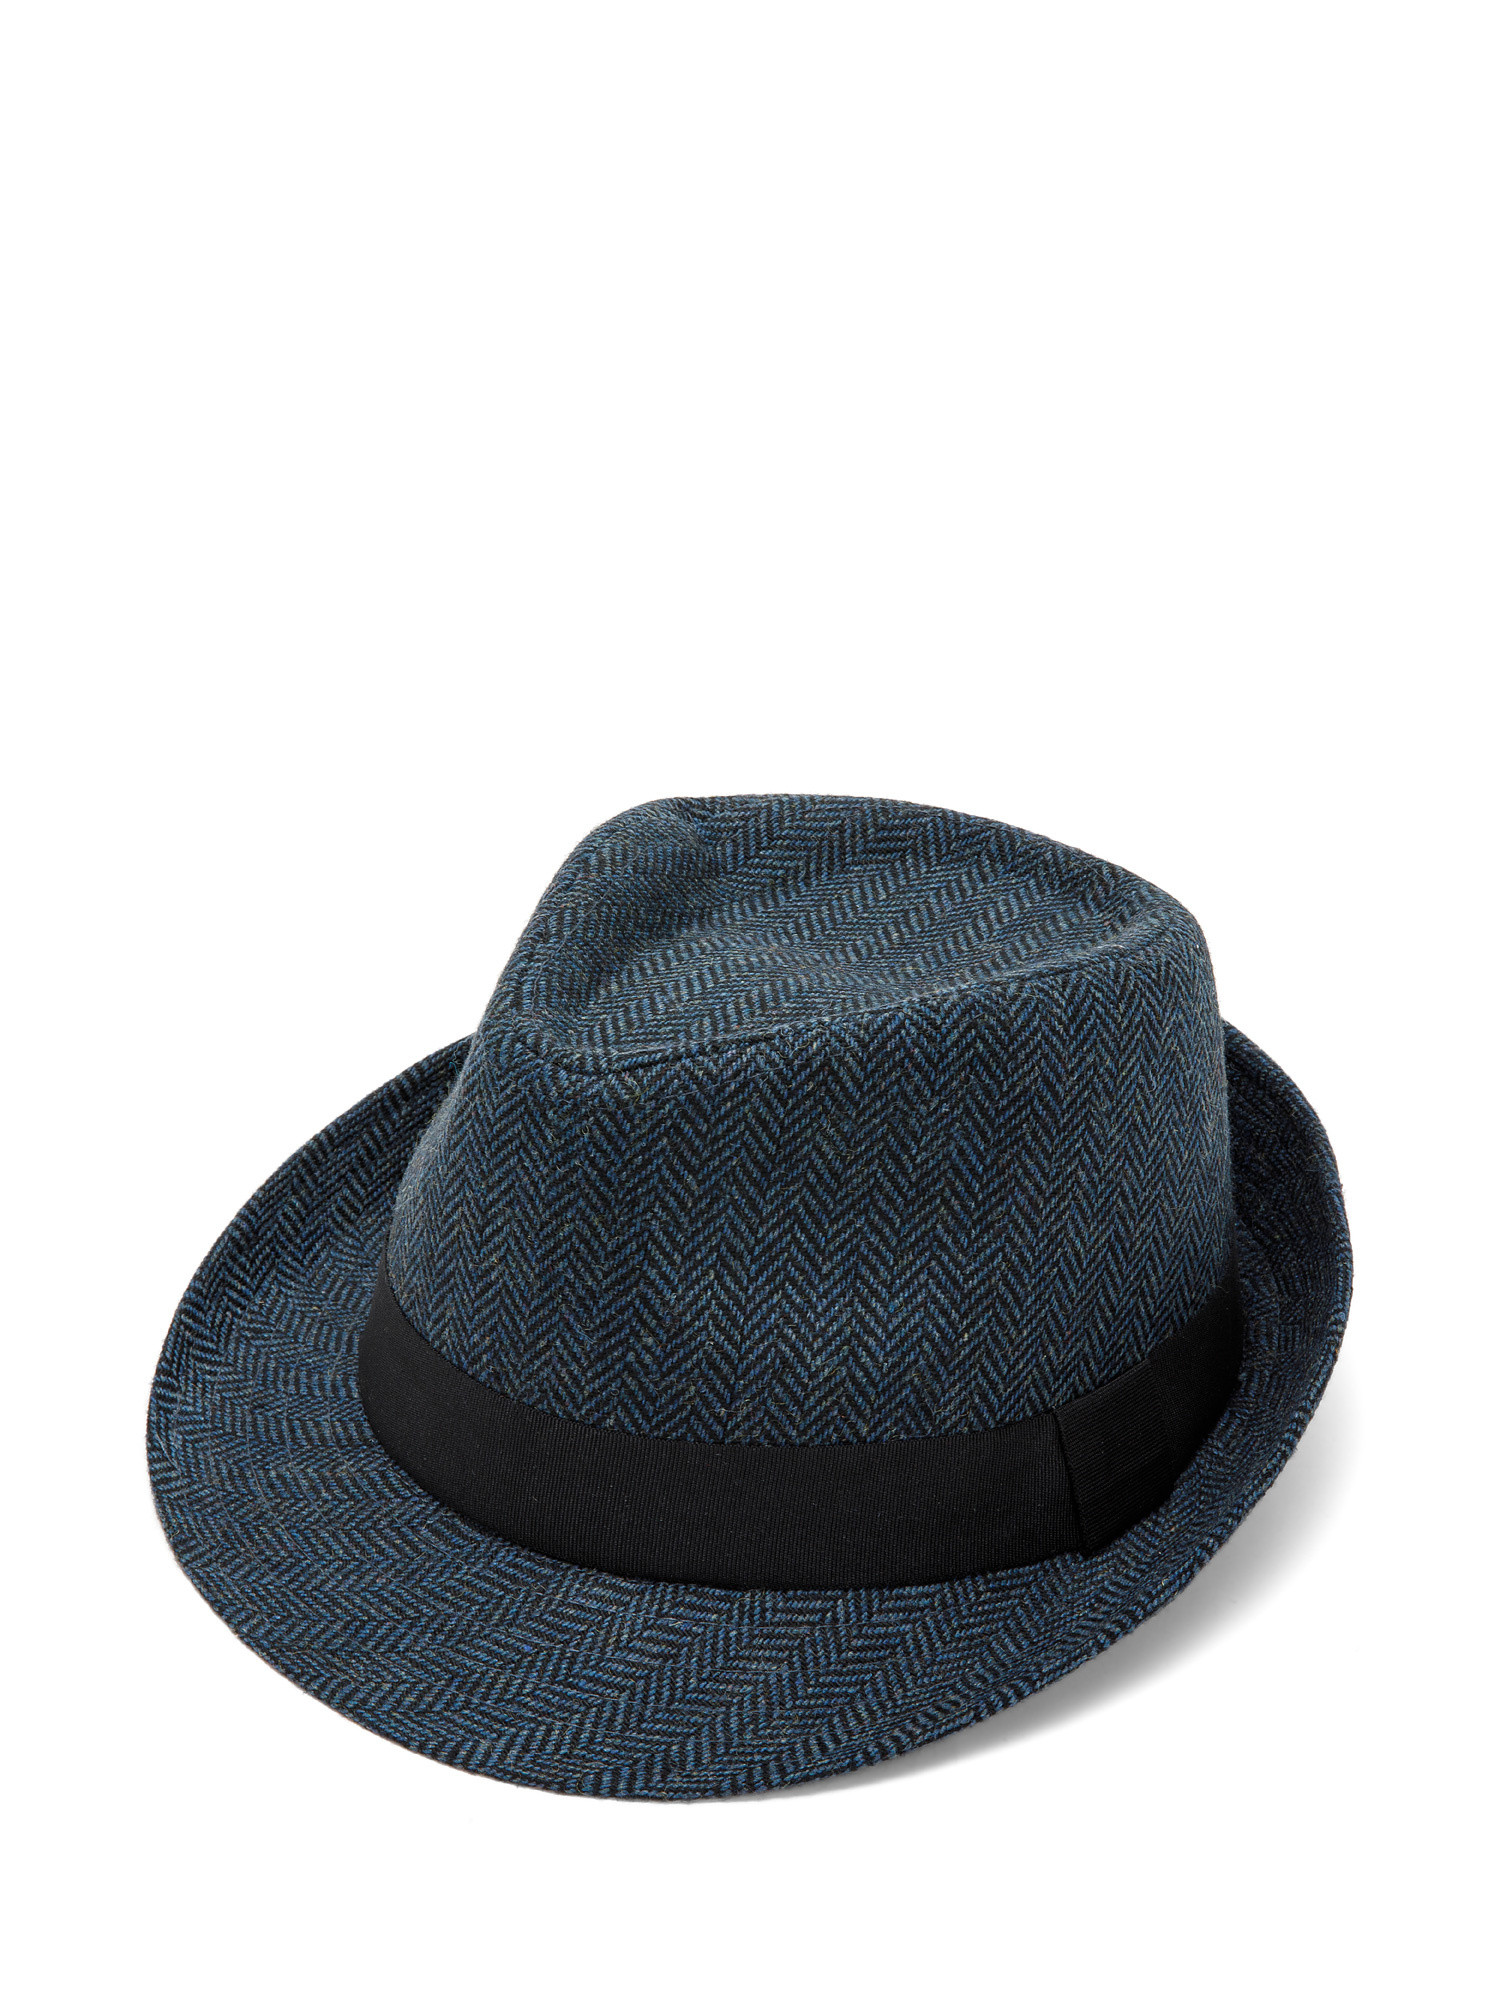 Alpine hat, Blue, large image number 0